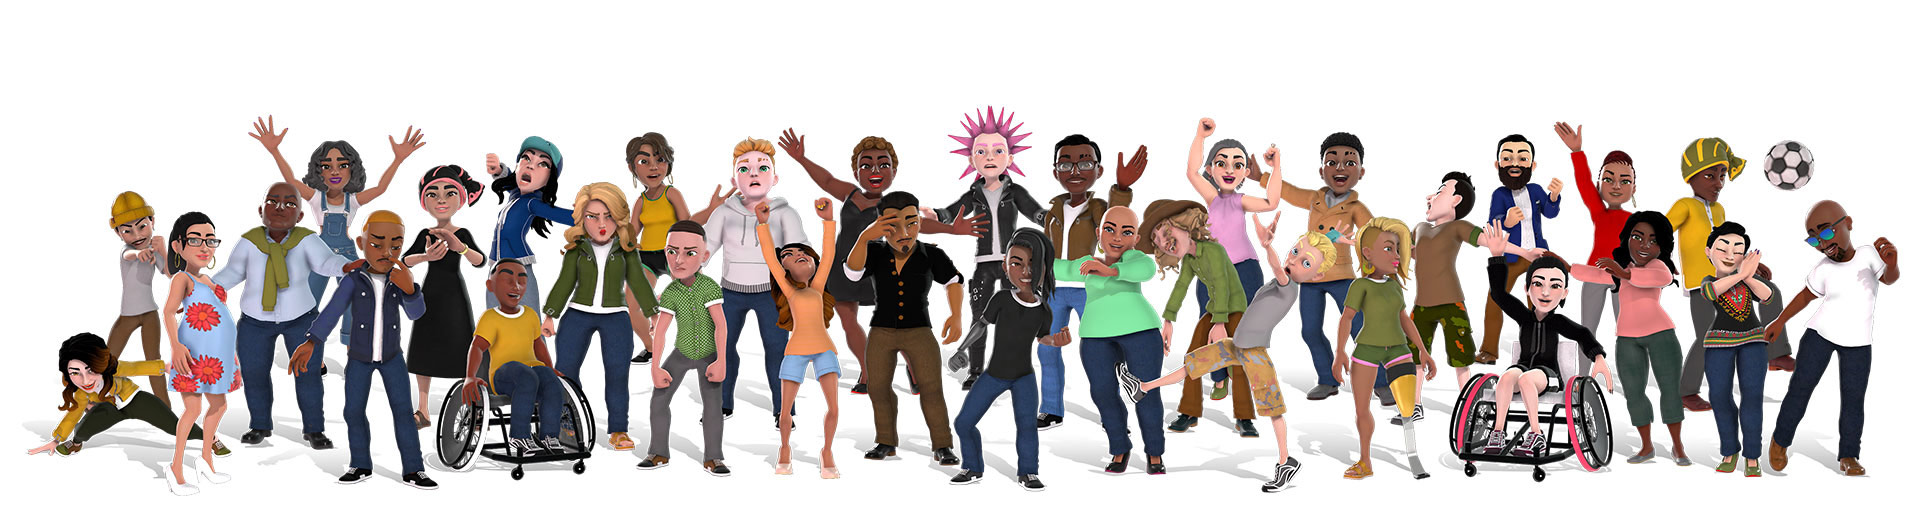 Xbox-avatarer som visar helt olika människor i olika outfits